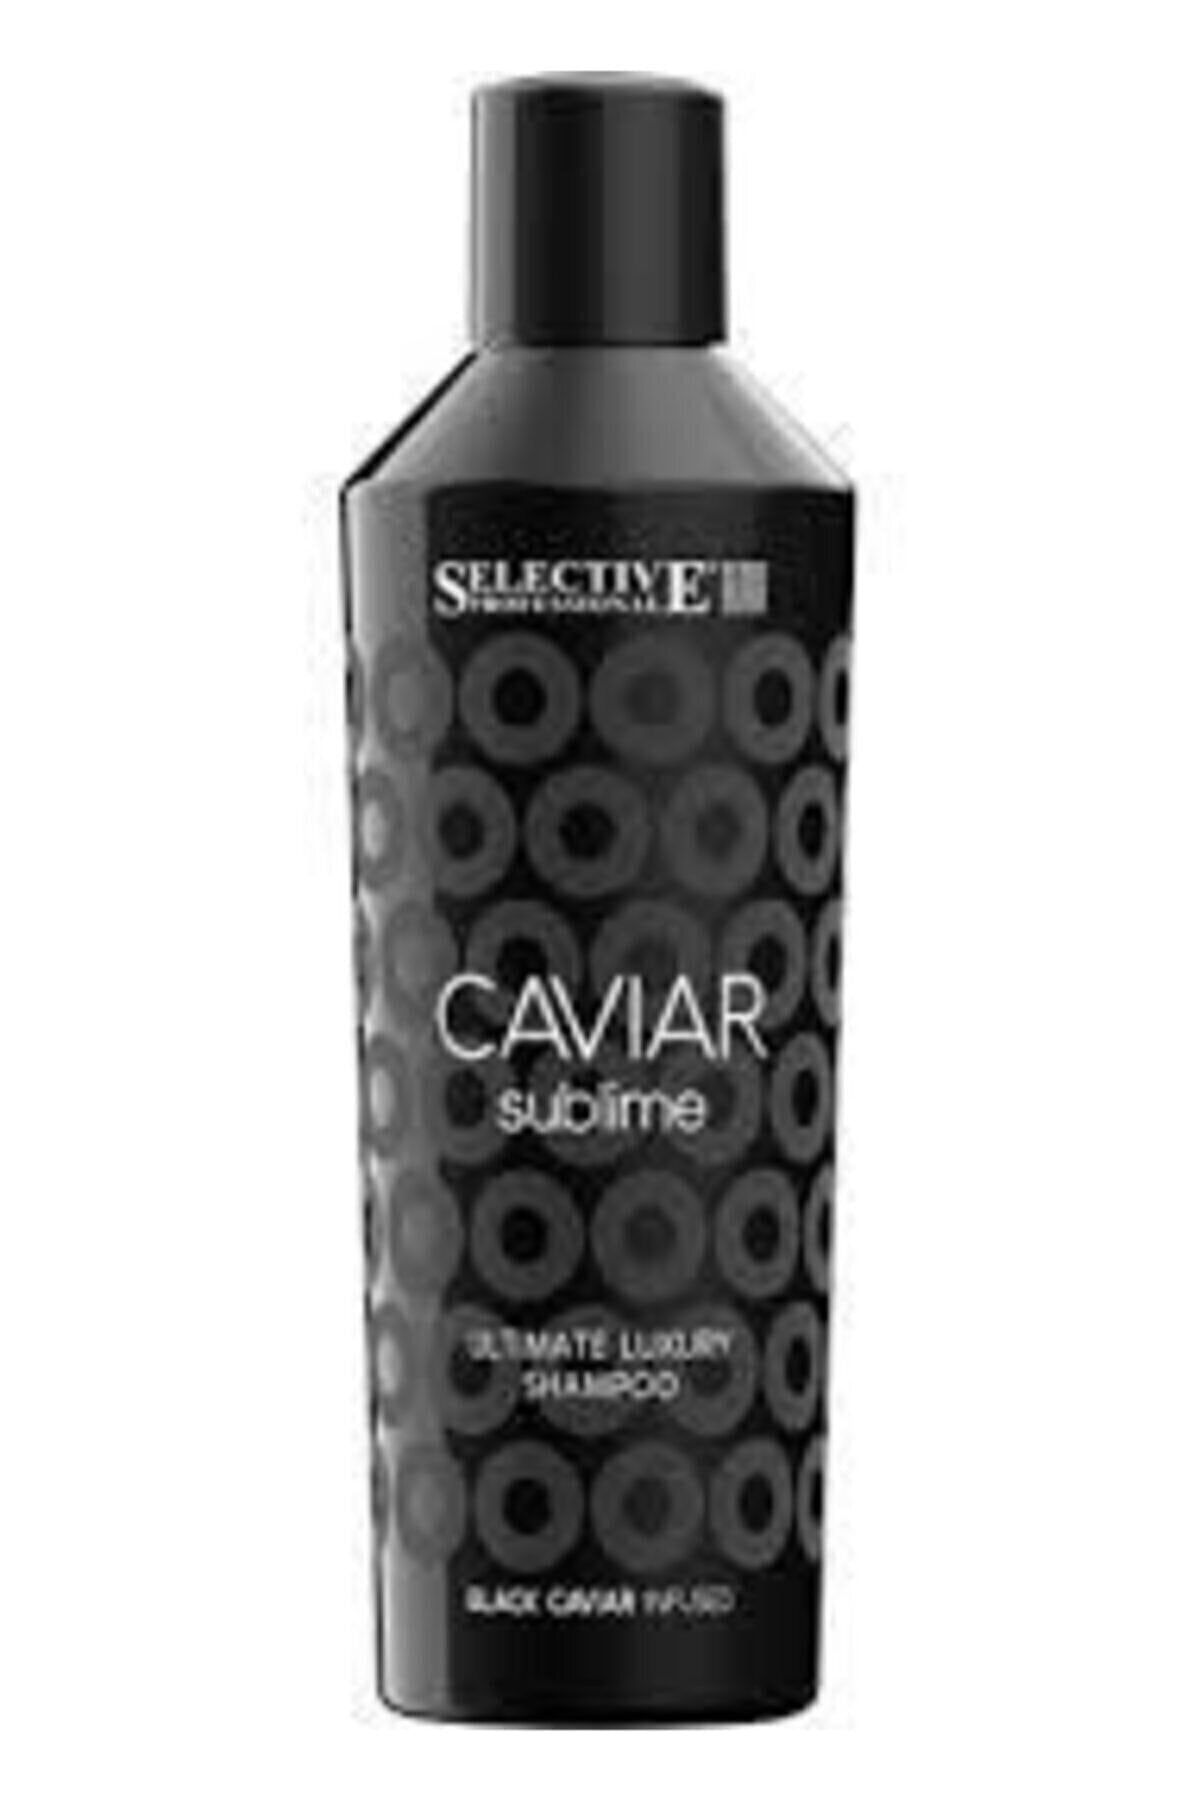 Selective Caviar Sublime Ultimate Luxury Şampuan Newonlıne.68